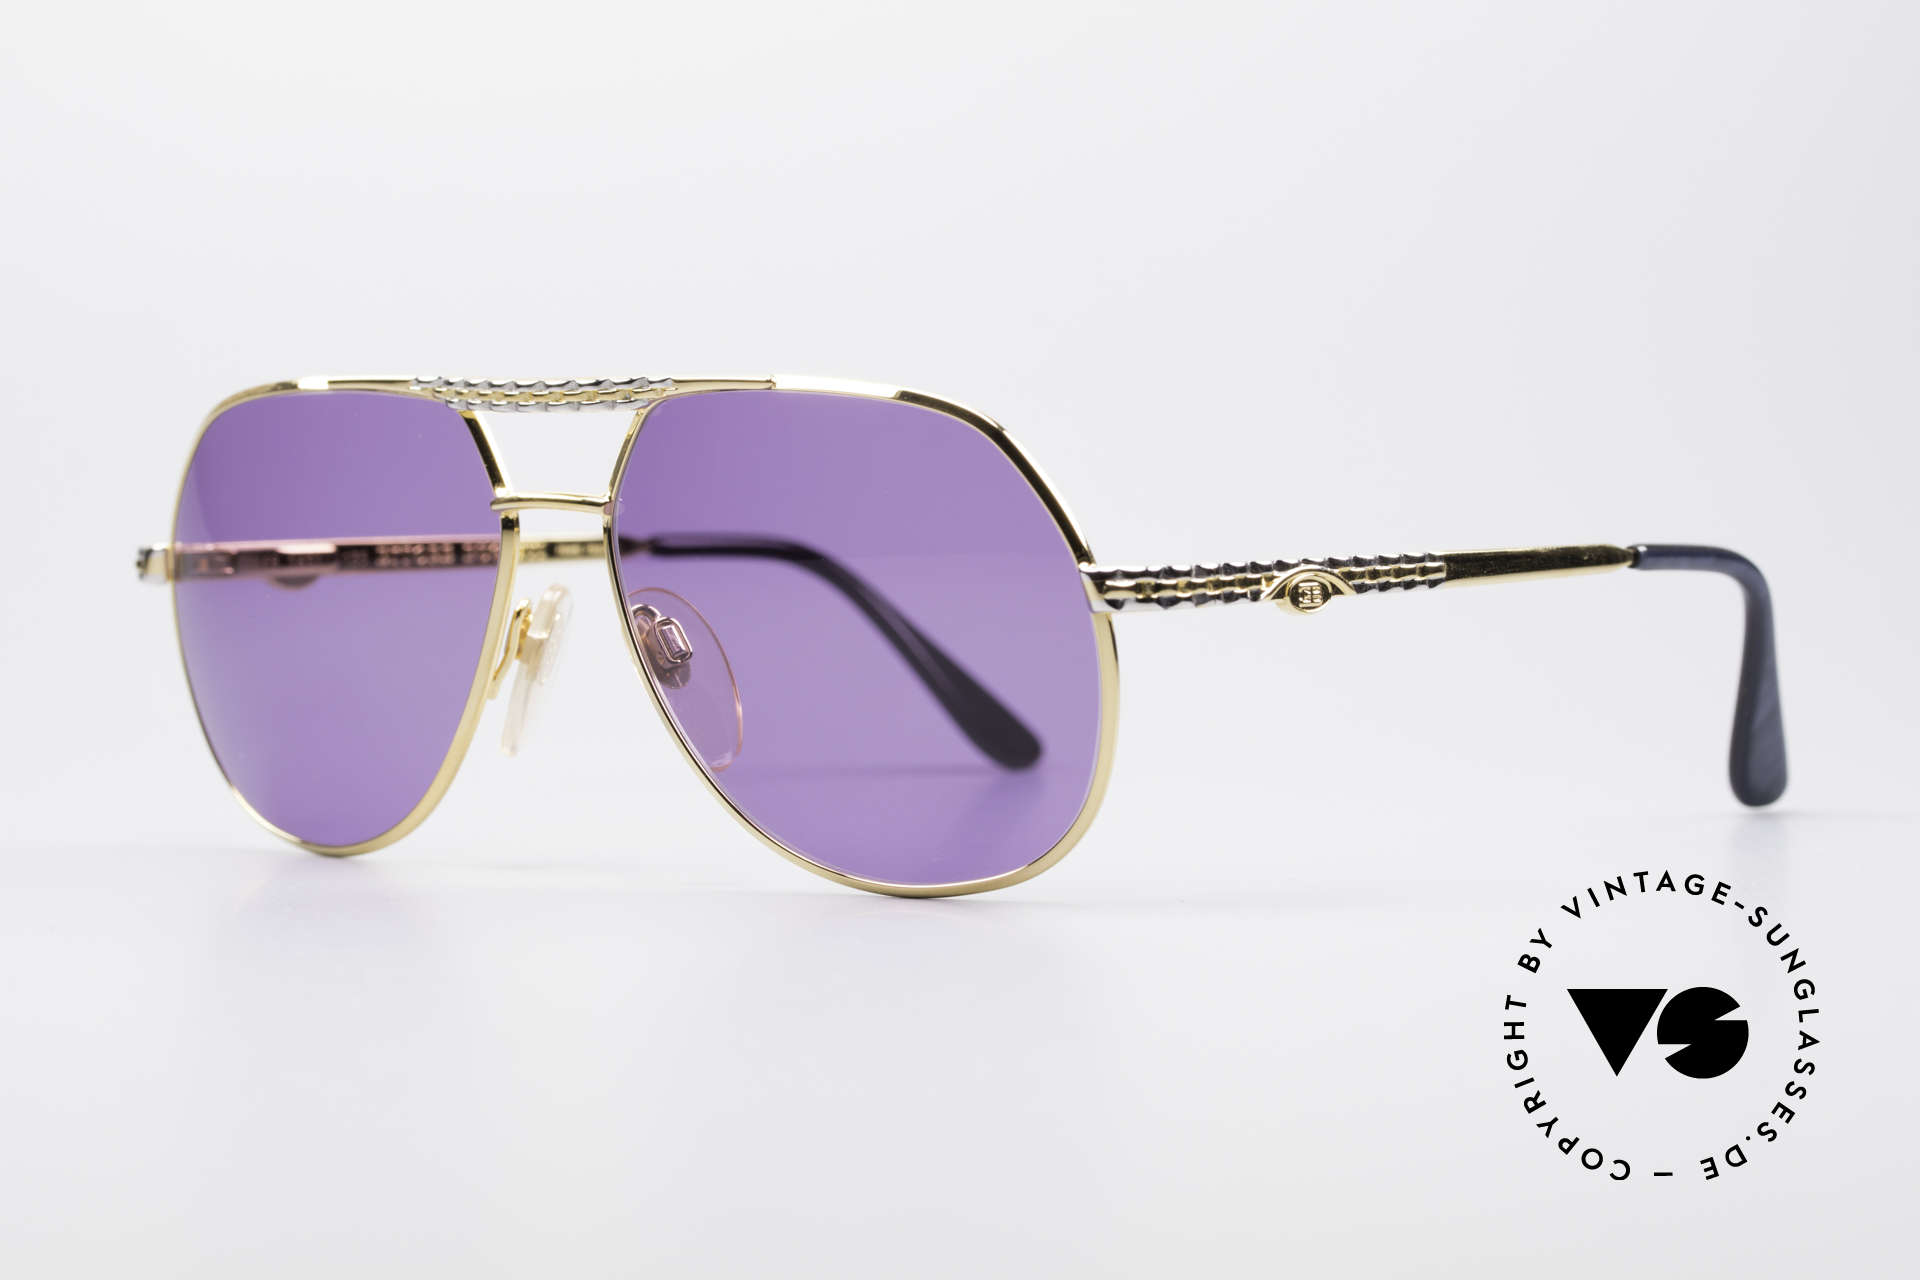 Sunglasses Bugatti EB502 - S Rare Luxury Sunglasses